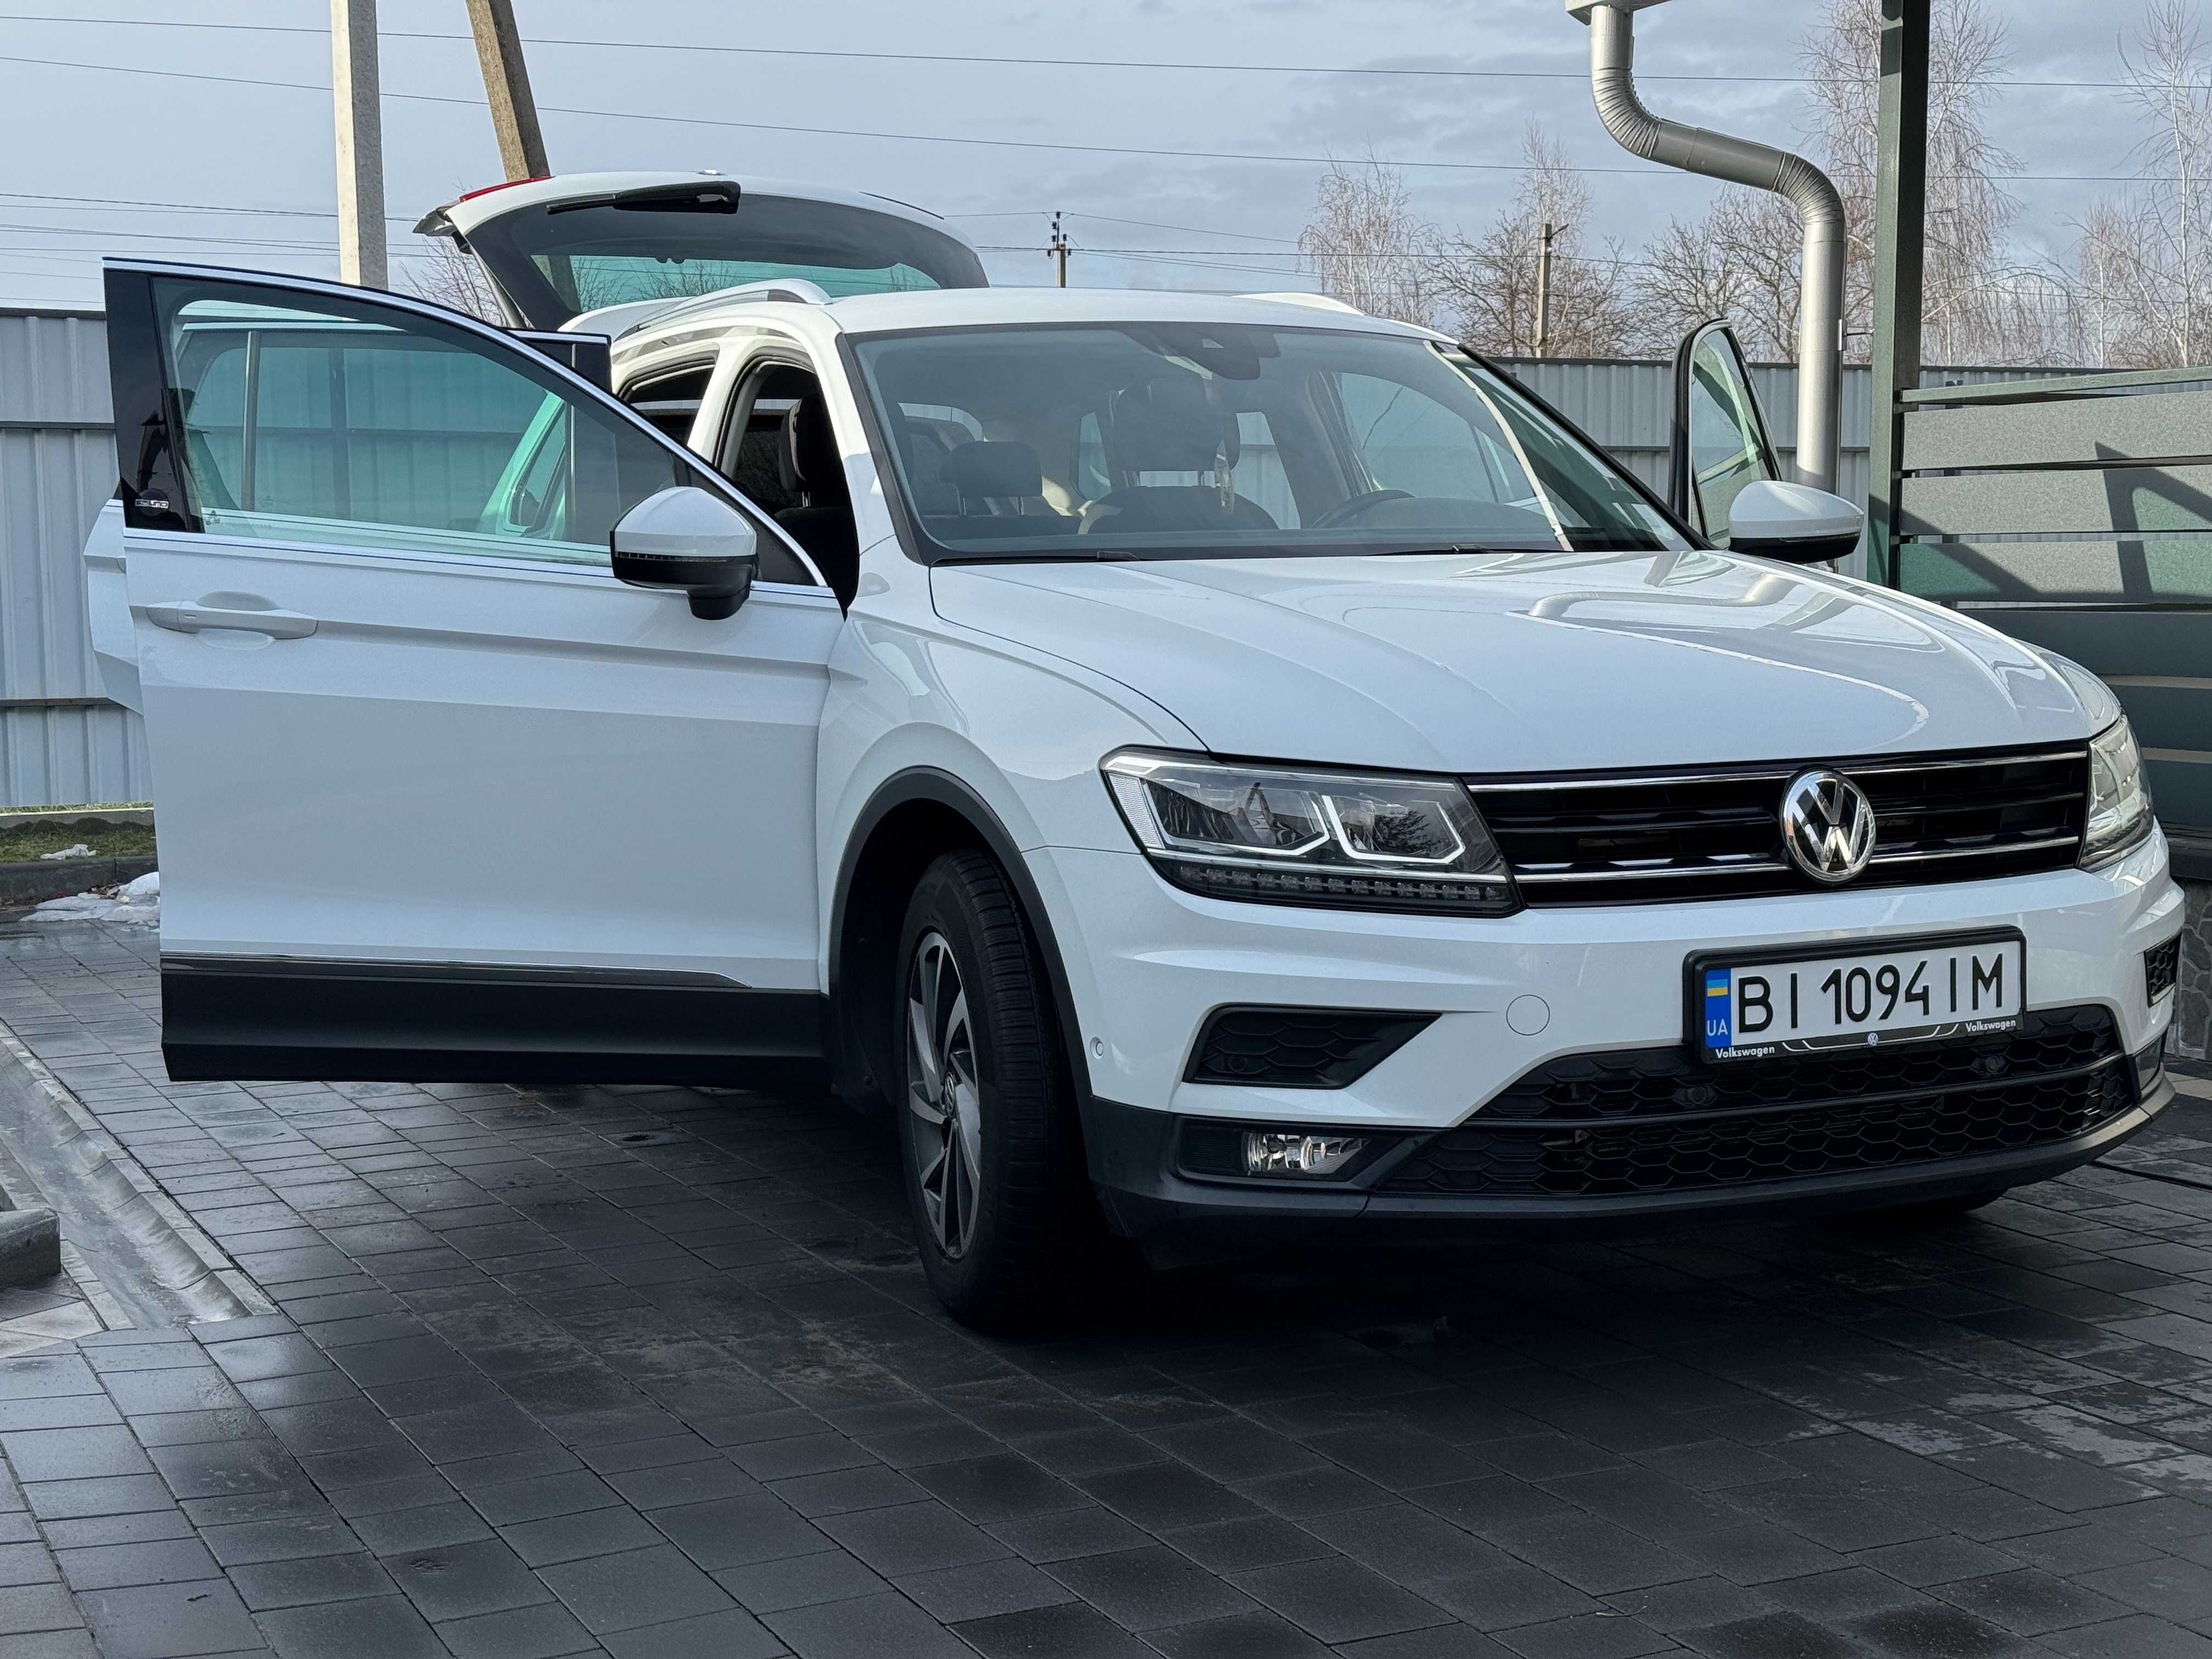 Volkswagen Tiguan 2018/2.0TDI/ Повний привід/ Фрнанція/ Ідеальний стан